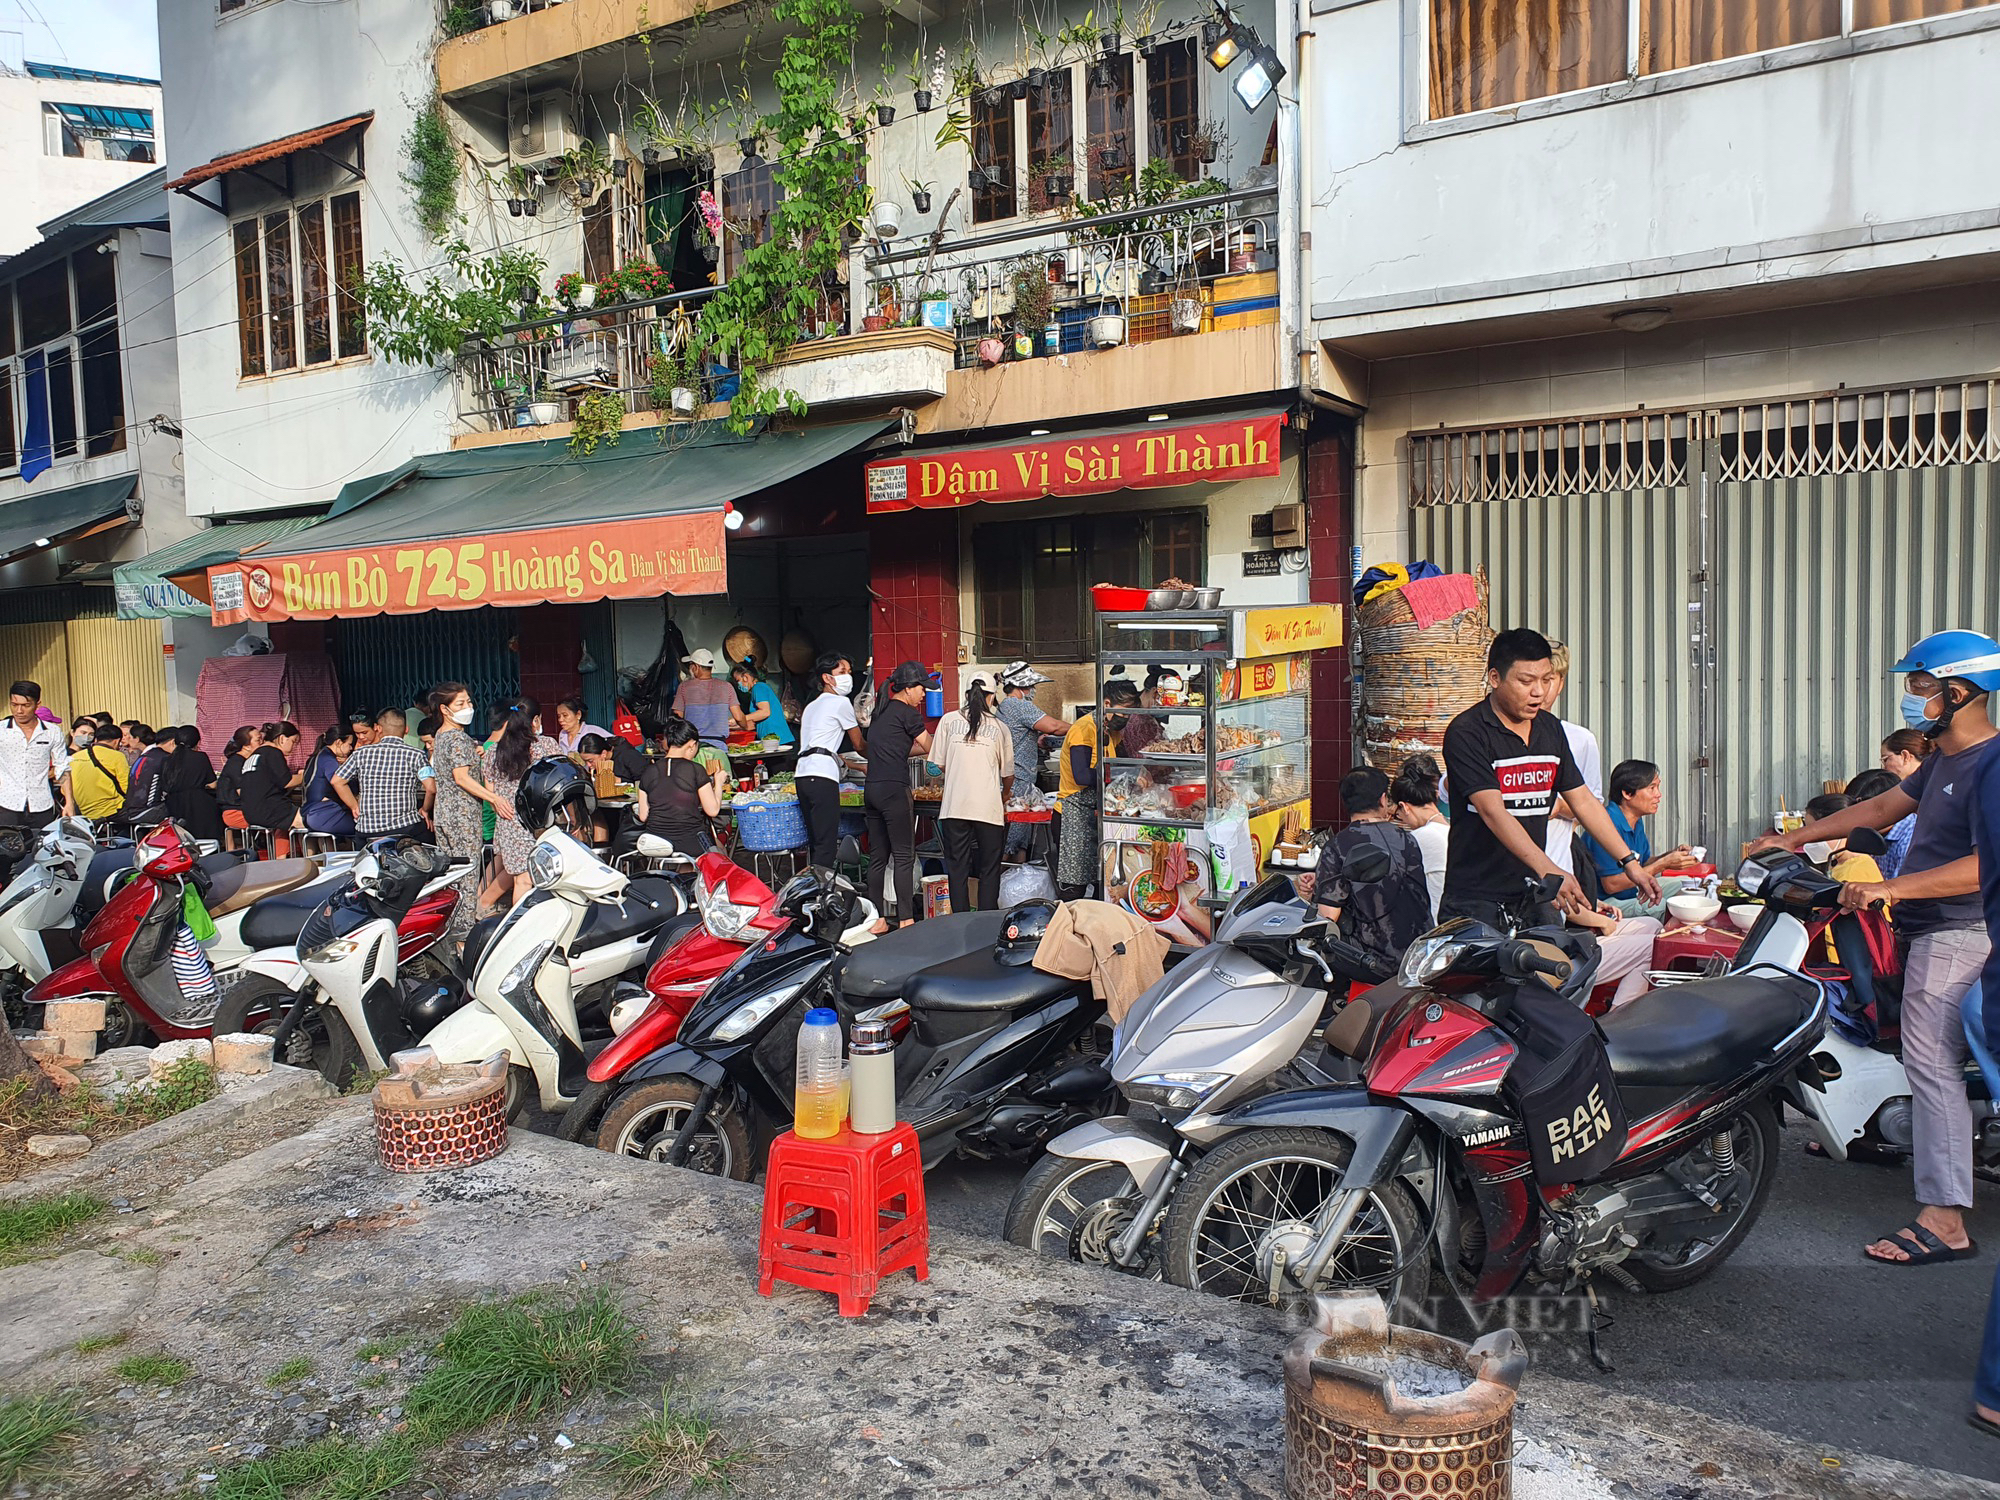 Sài Gòn quán: Quán bún bò chỉ bán 2 tiếng/ngày, khách chờ mở cửa là ập vô ăn - Ảnh 3.